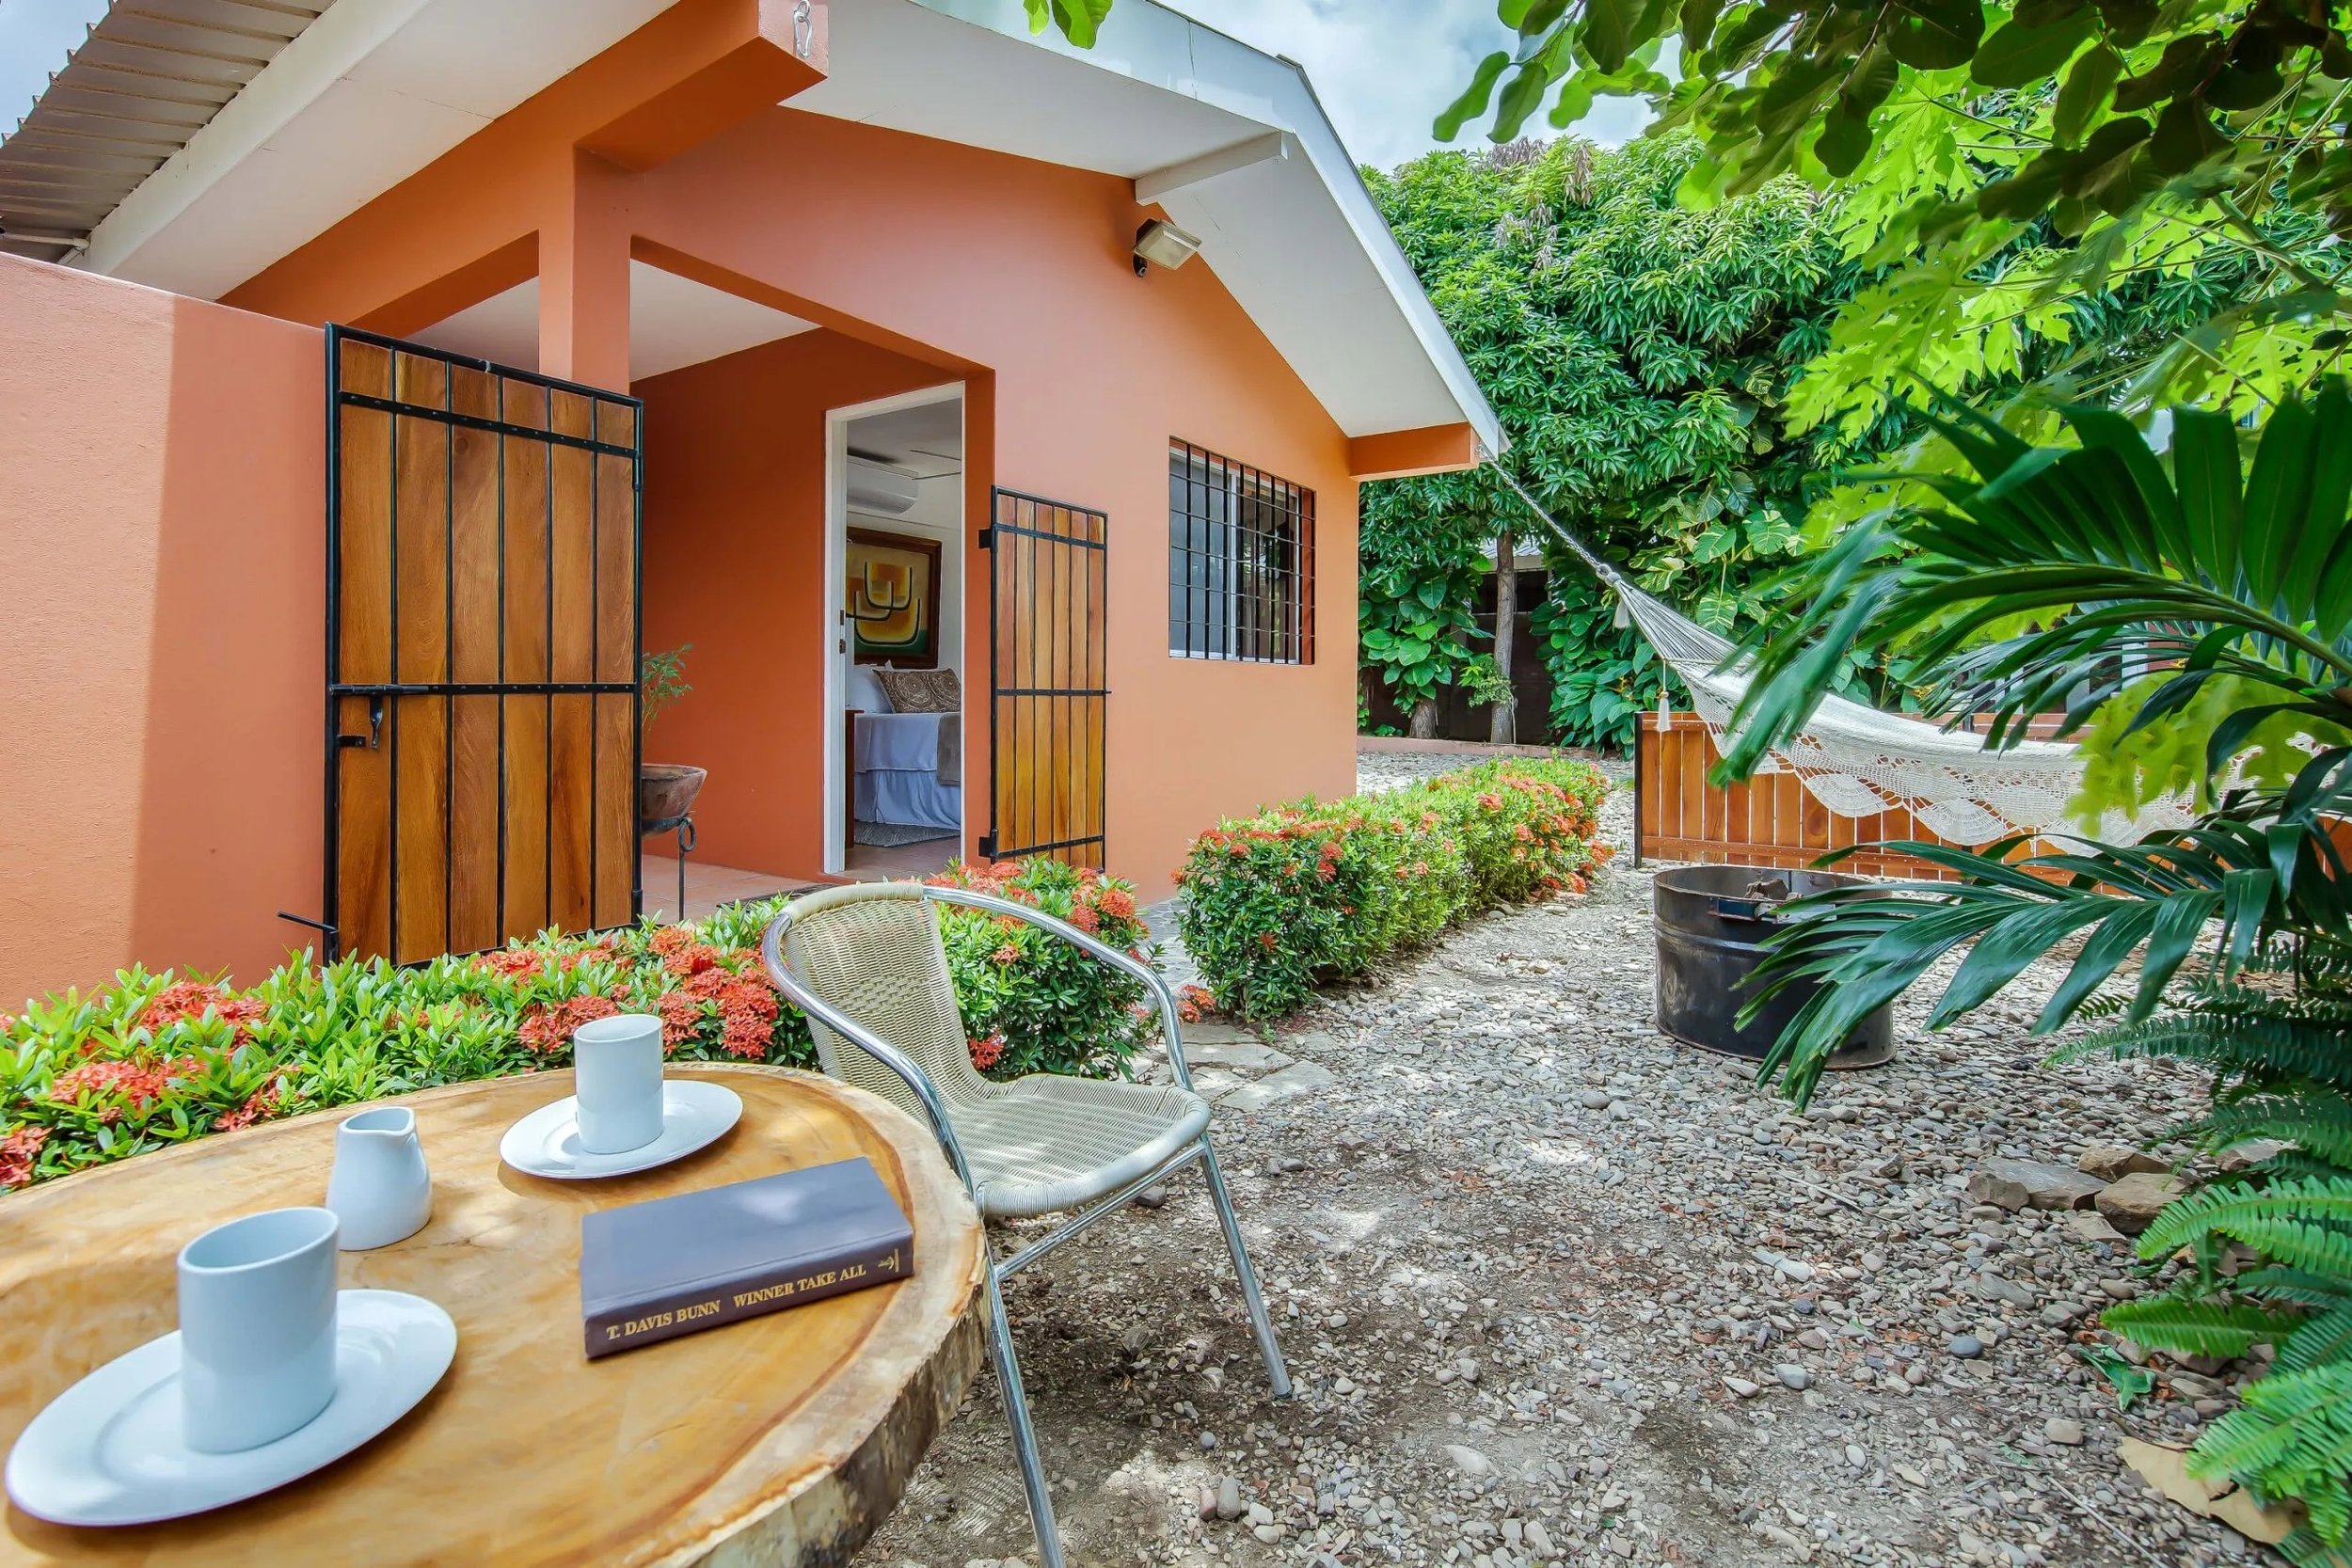 Property Real Estate Commercial Hotel For Sale in San Juan Del Sur, Nicaragua (11).jpg